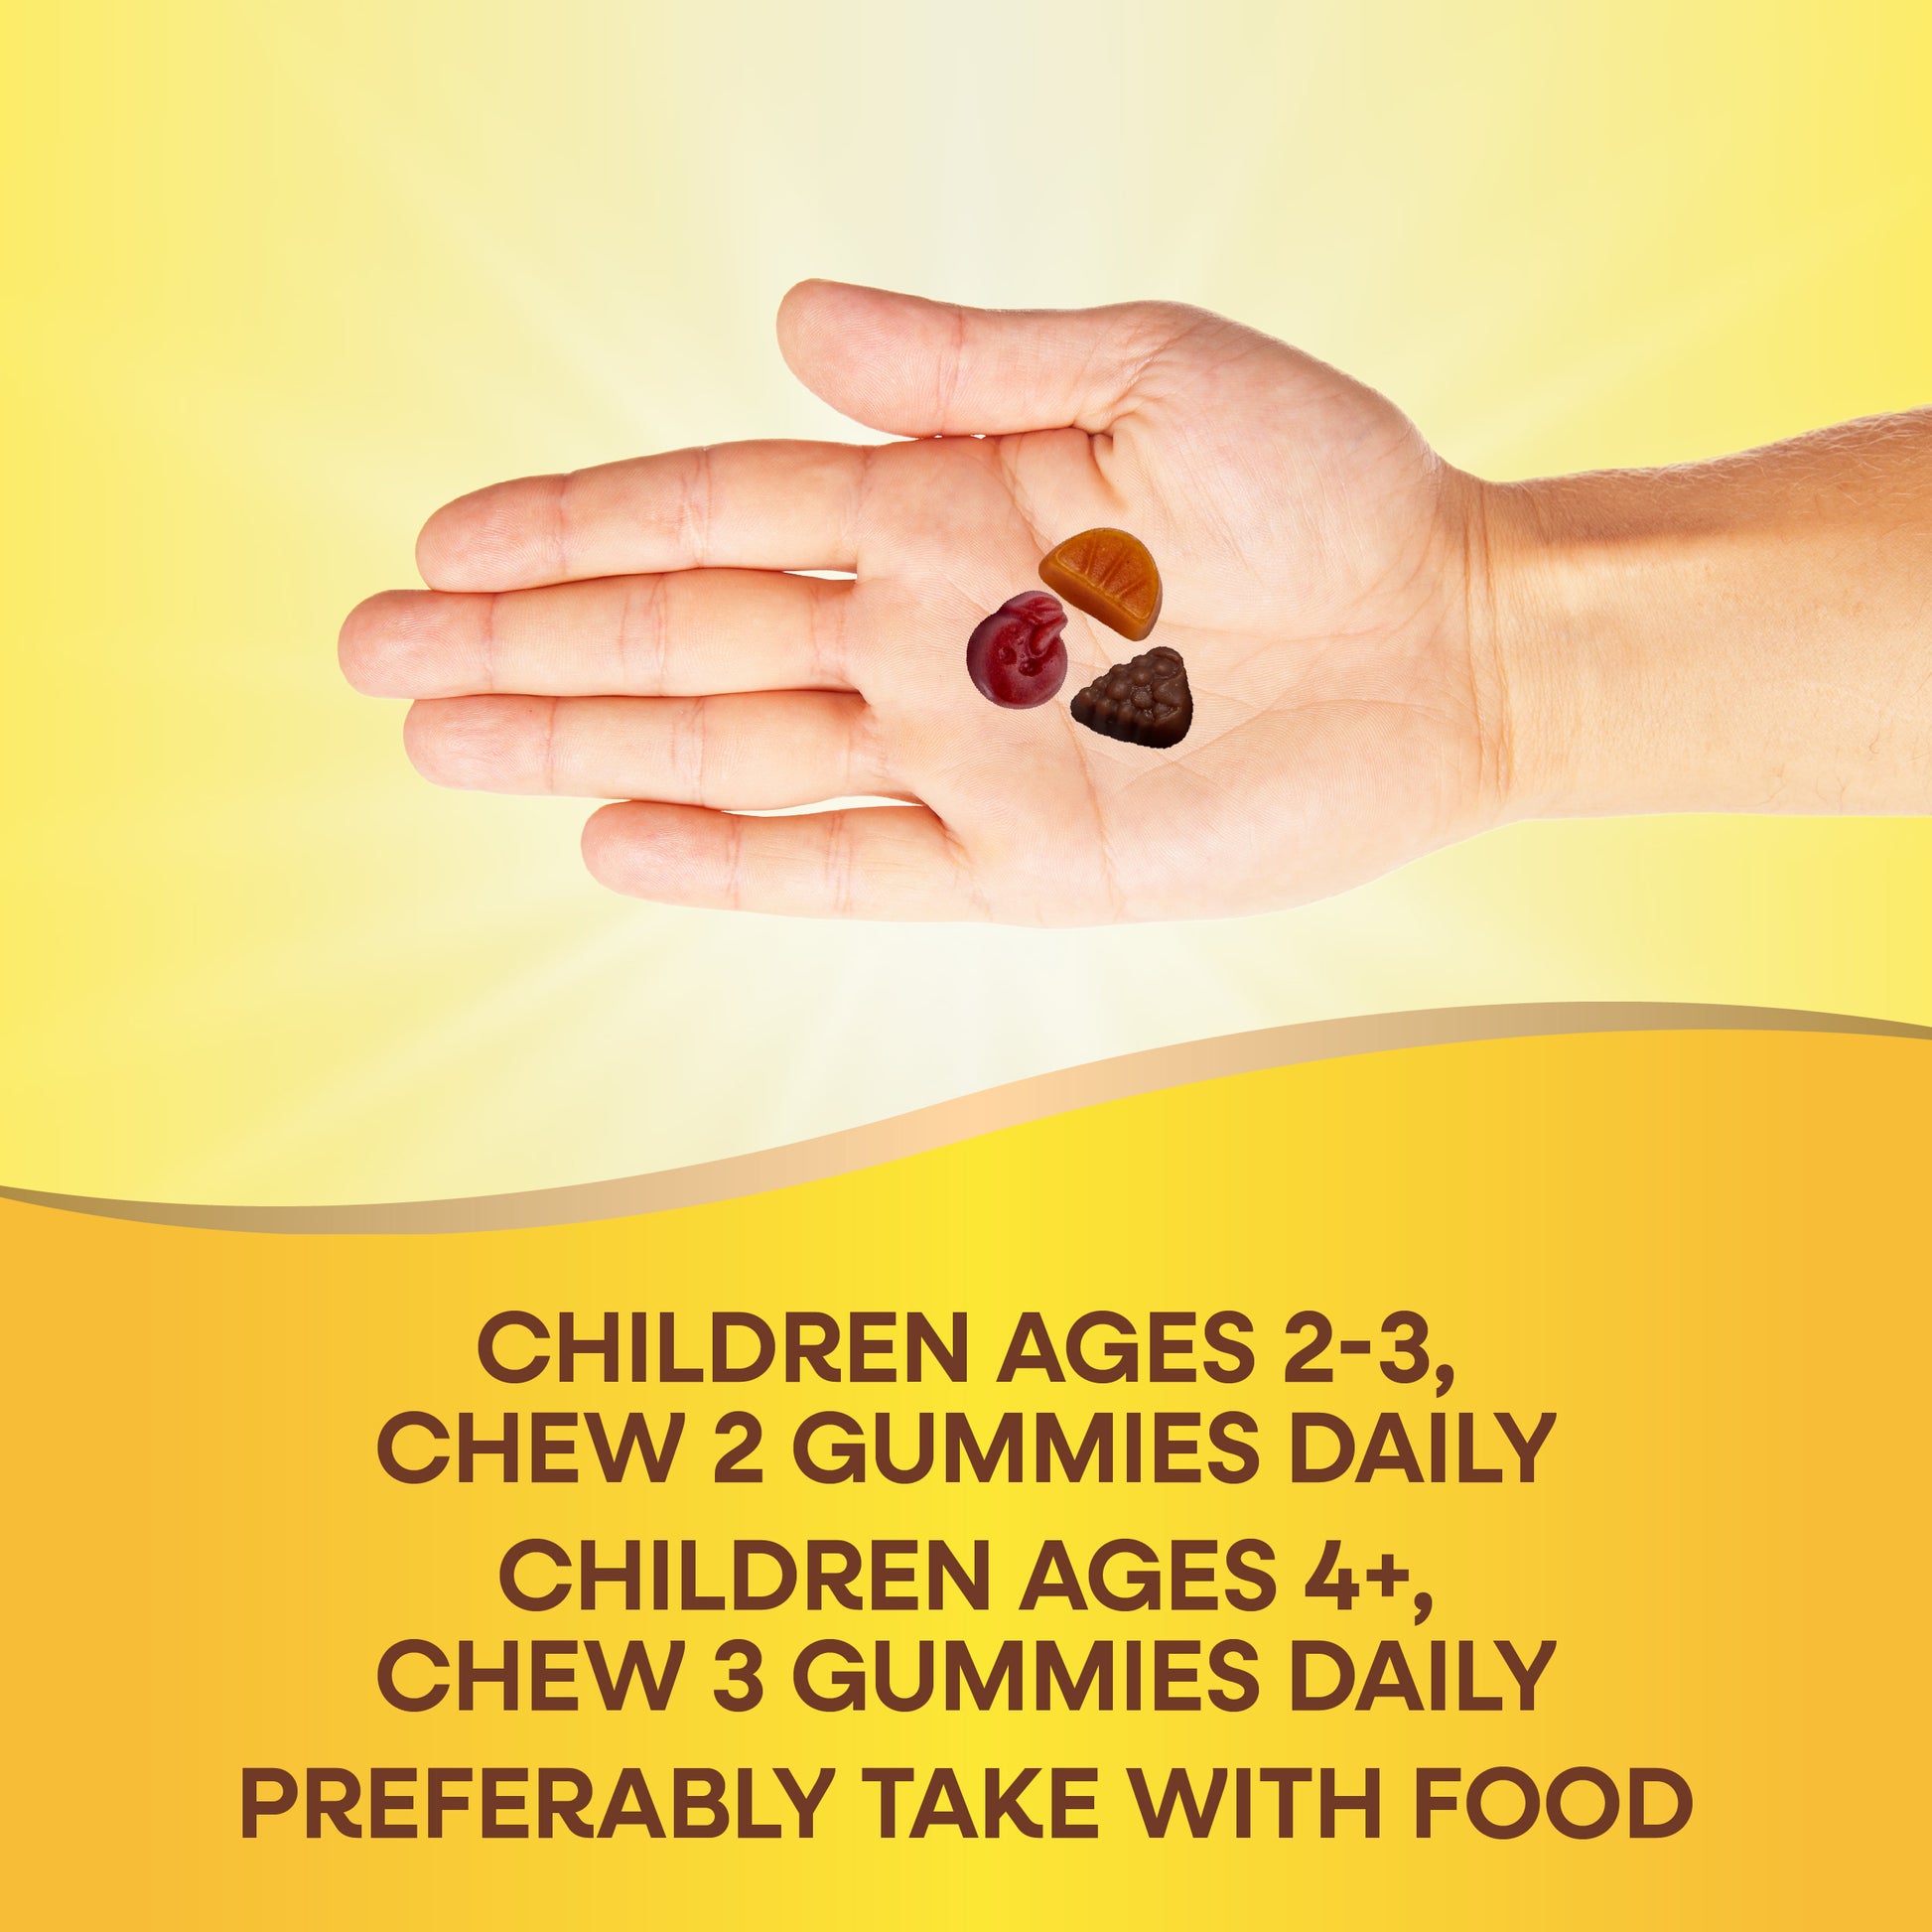 Nature's Way® | Alive!® Premium Kids Gummy Multivitamin